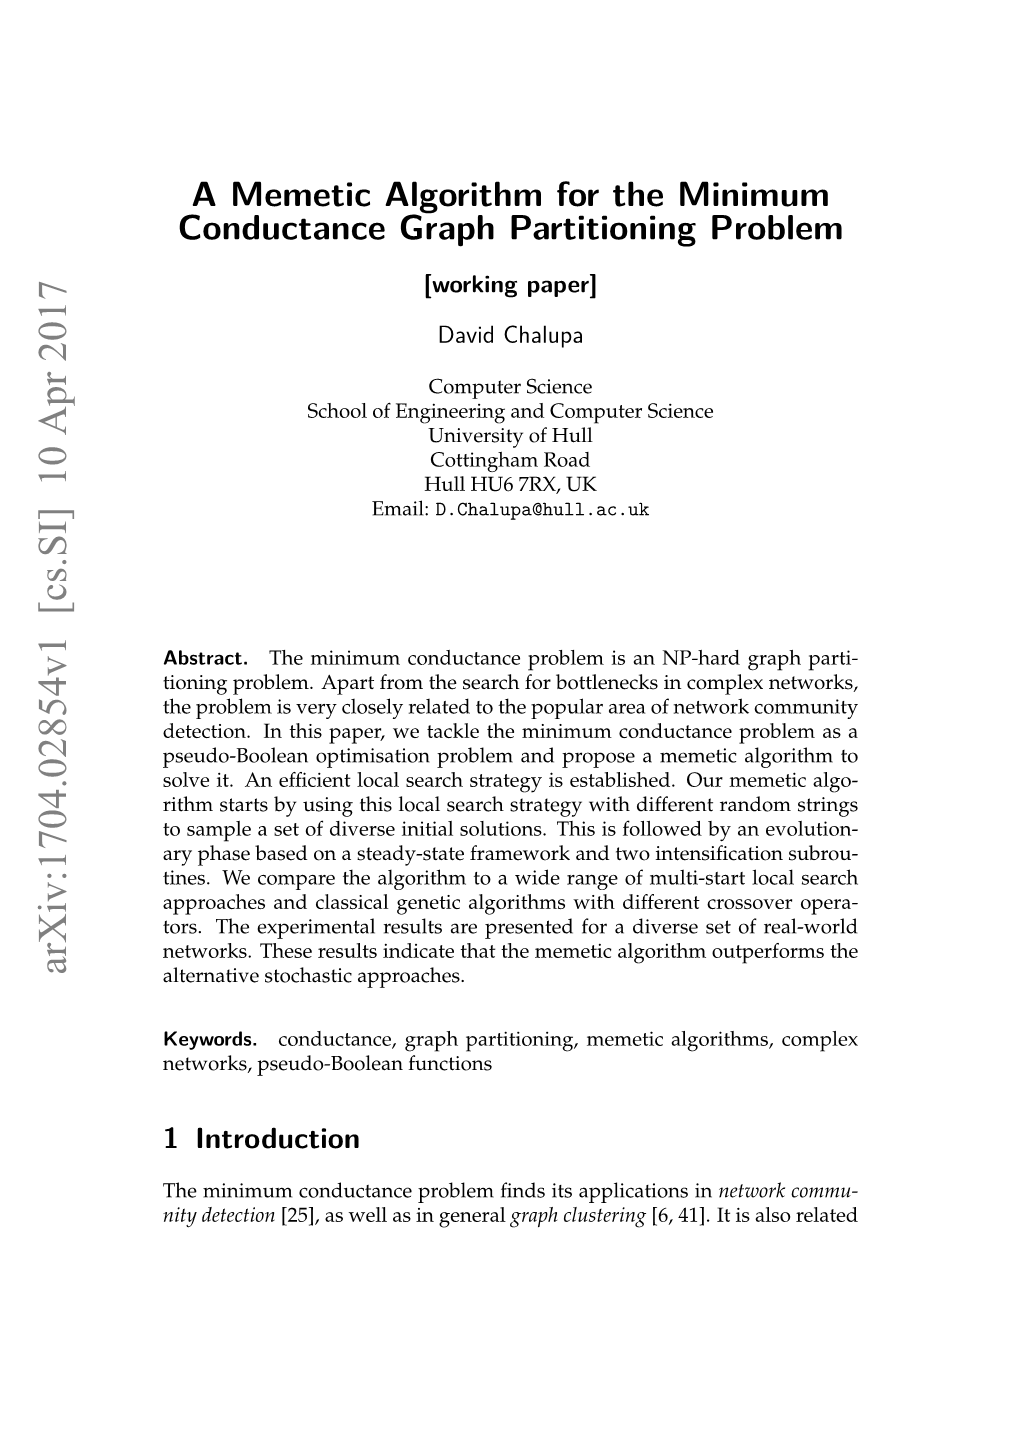 A Memetic Algorithm for the Minimum Conductance Graph Partitioning Problem